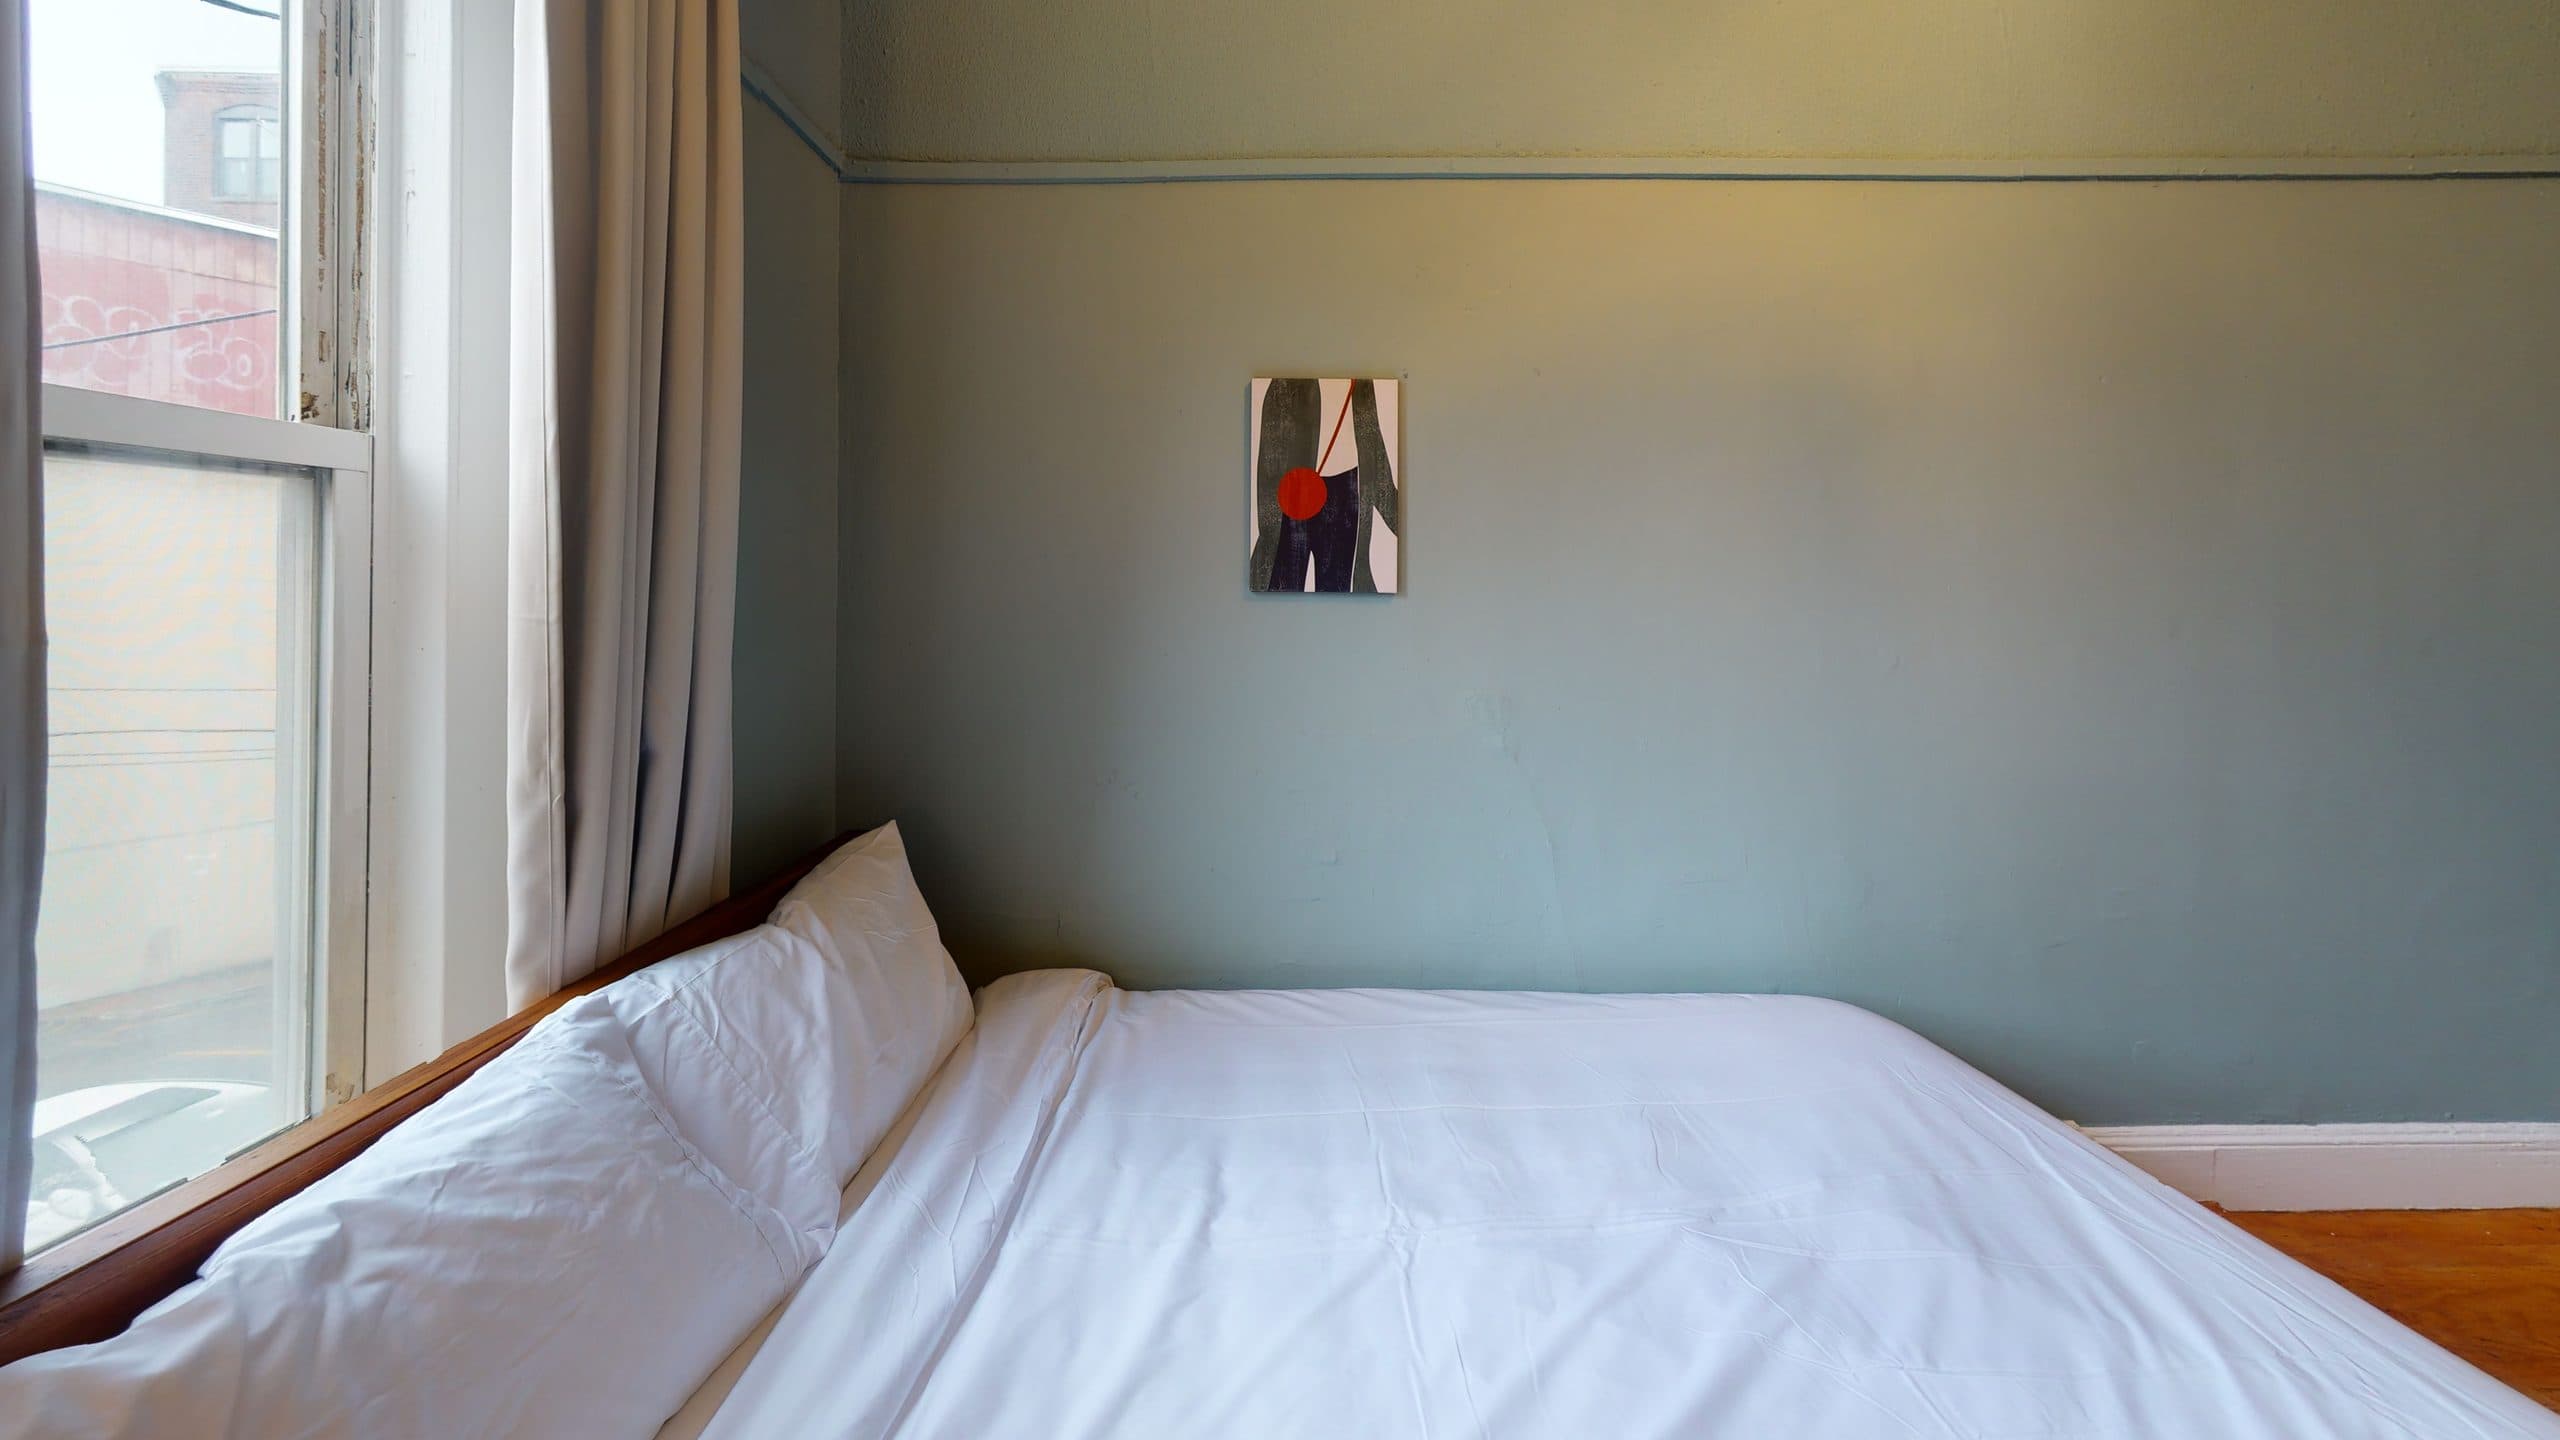 Photo 6 of #1236: Queen Bedroom C at June Homes